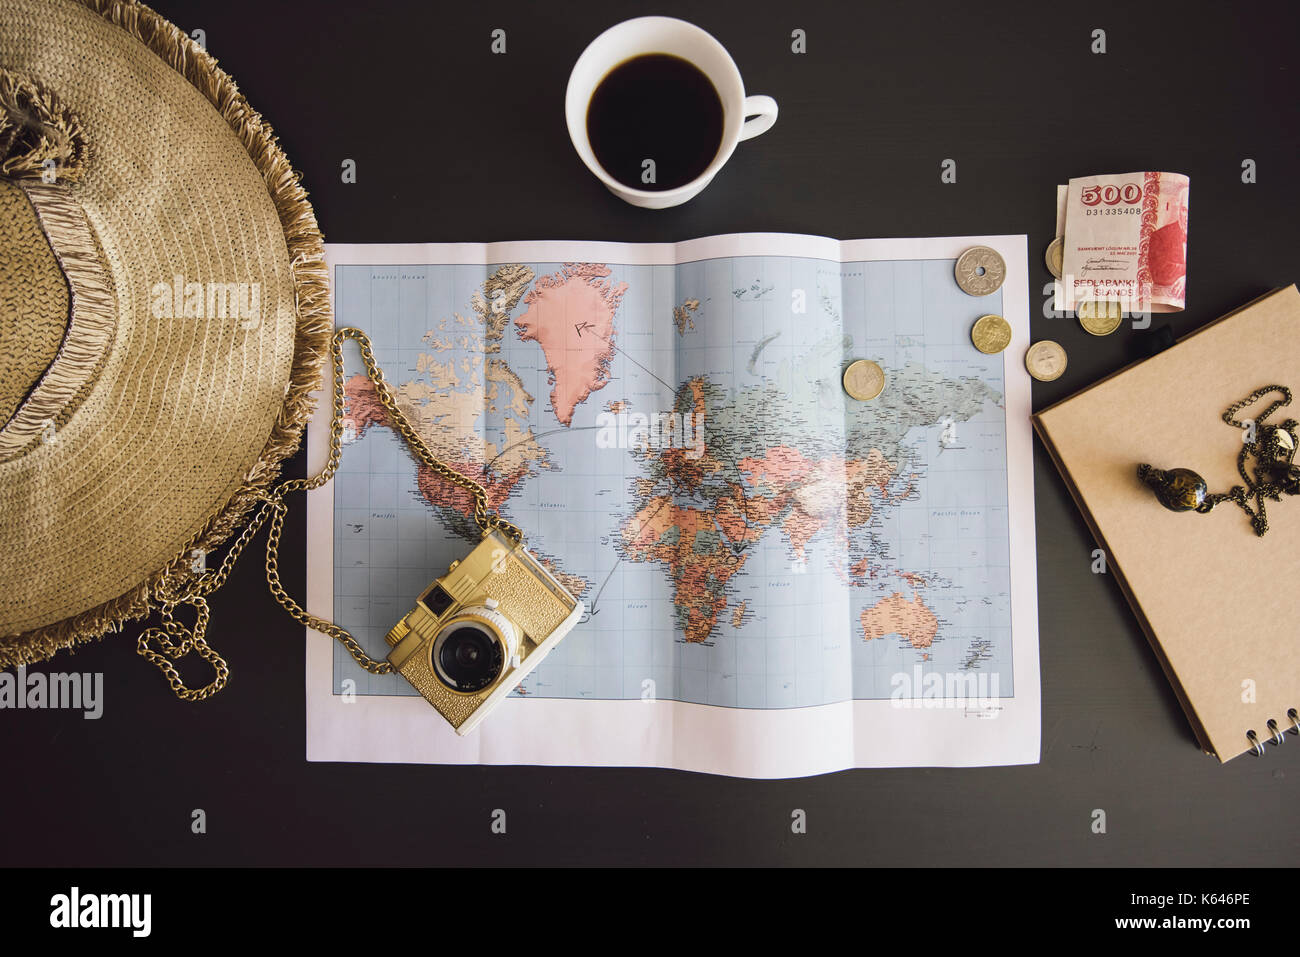 Planificando el viaje. mapa del mundo con el sombrero, cámara de cine, algo de dinero, bloc de notas de papel reciclado y taza de café recién hecho en la oscuridad de la tabla Foto de stock